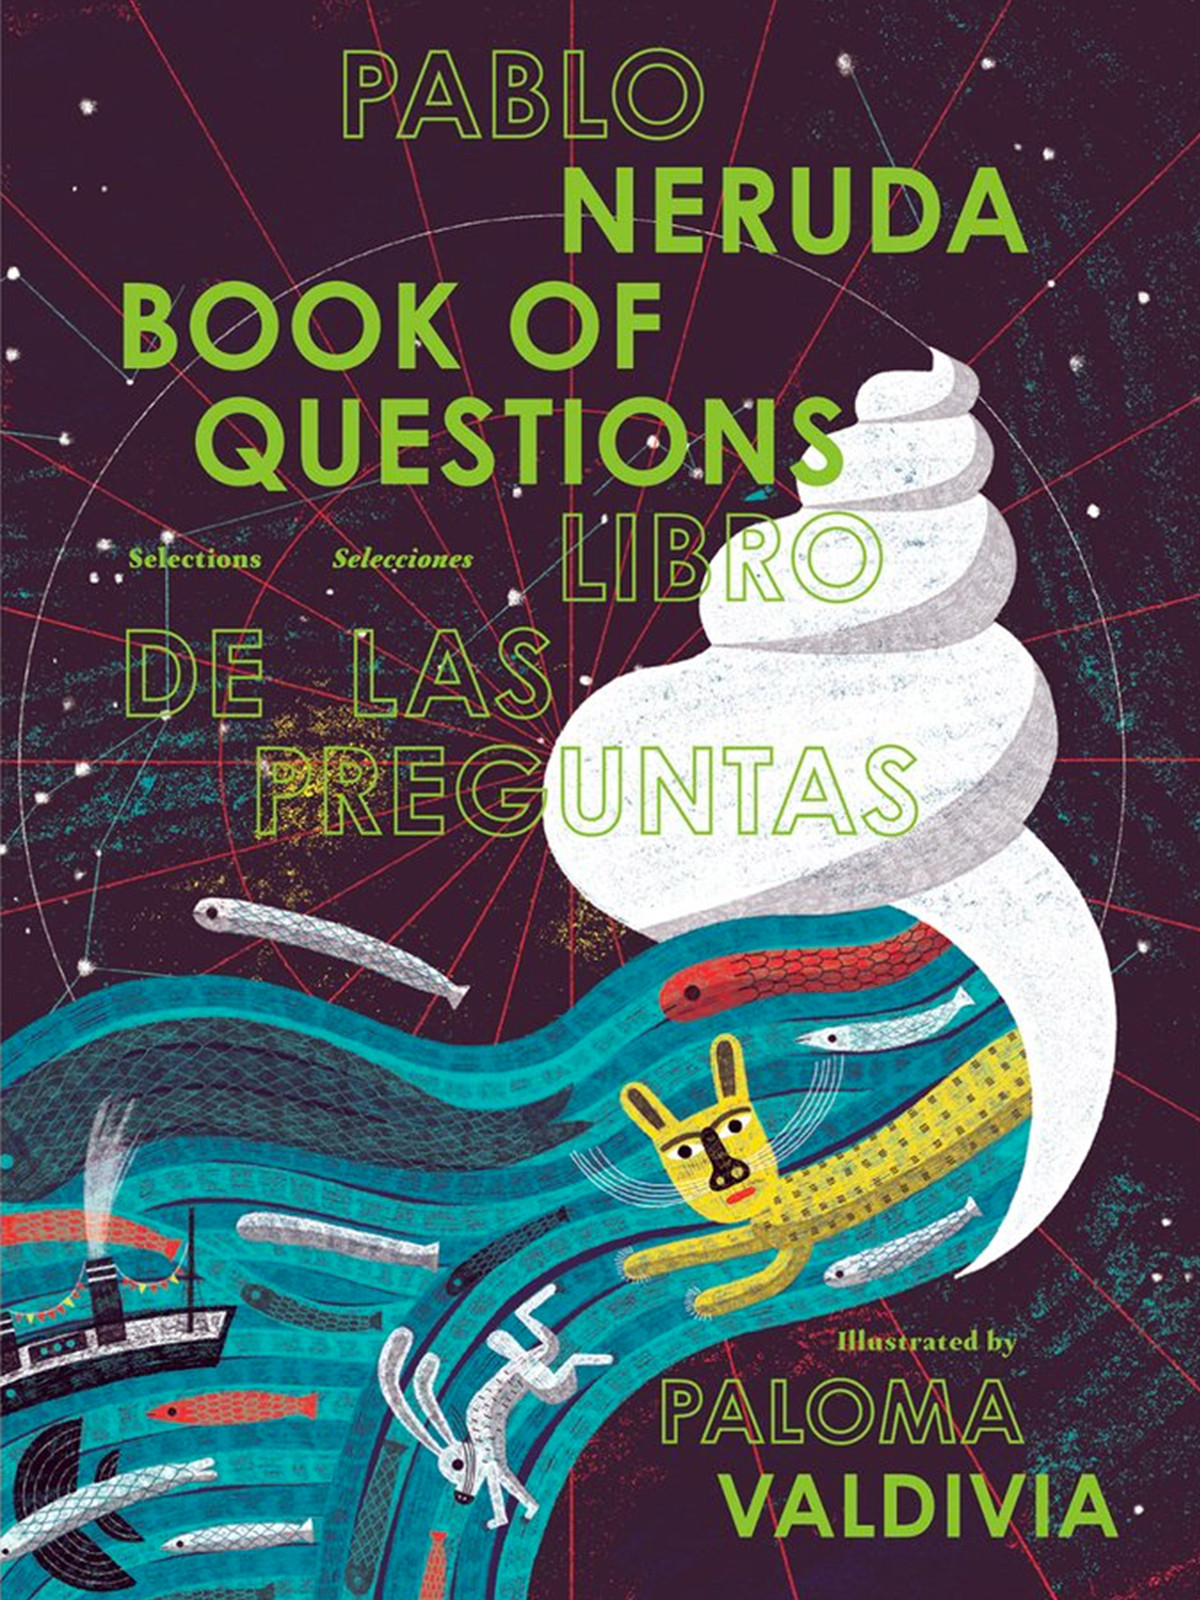 'Libro de las preguntas', de Pablo Neruda, ilustrado por Paloma Valdivia